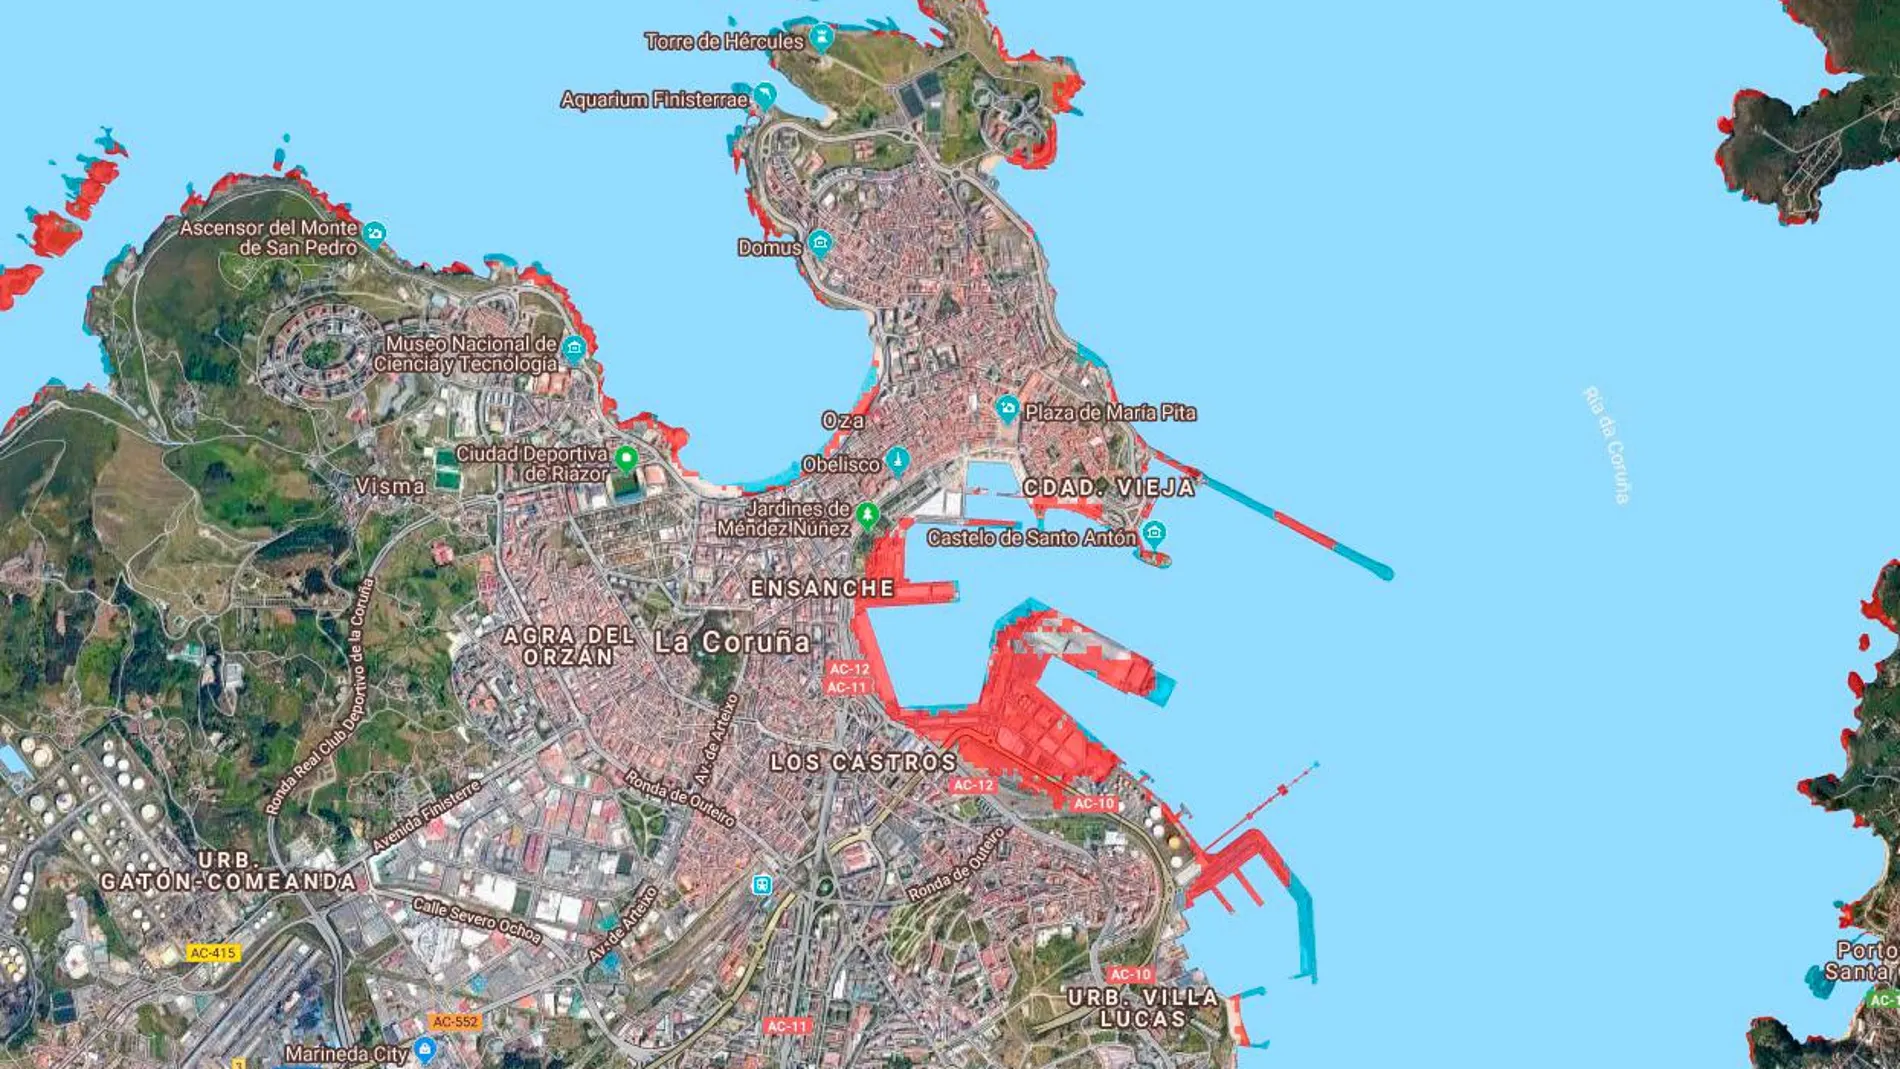 Las zonas rojas destacan las zonas costeras que desaparecerían bajo el mar en 2050